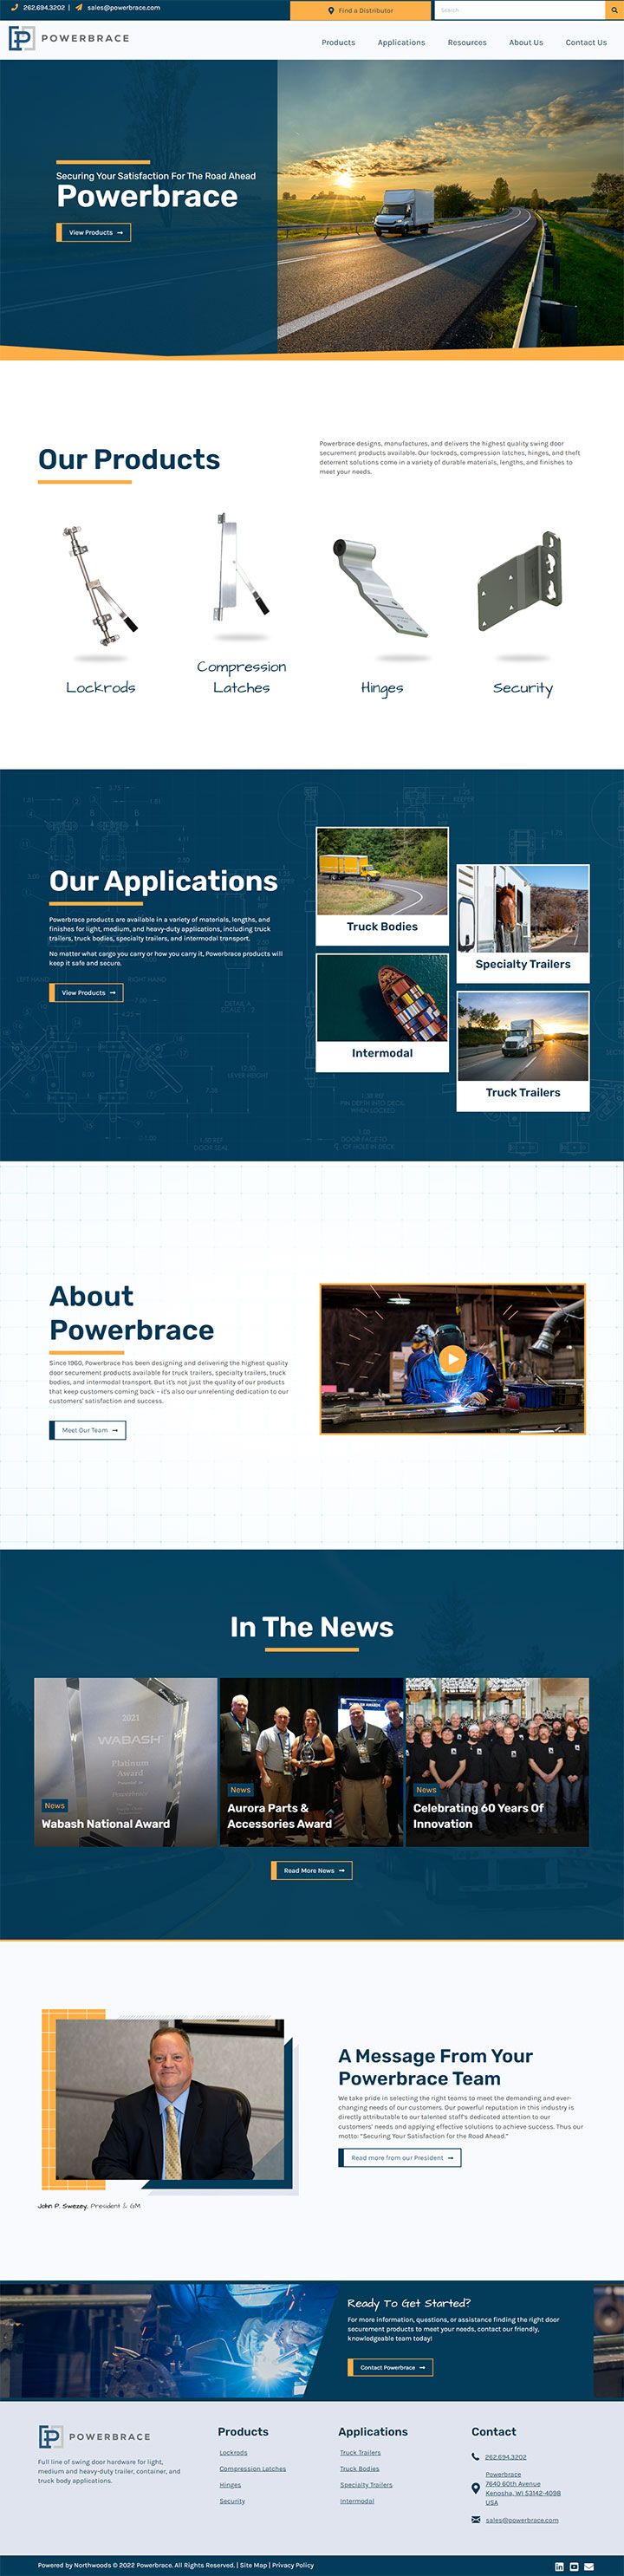 Powerbrace website homepage